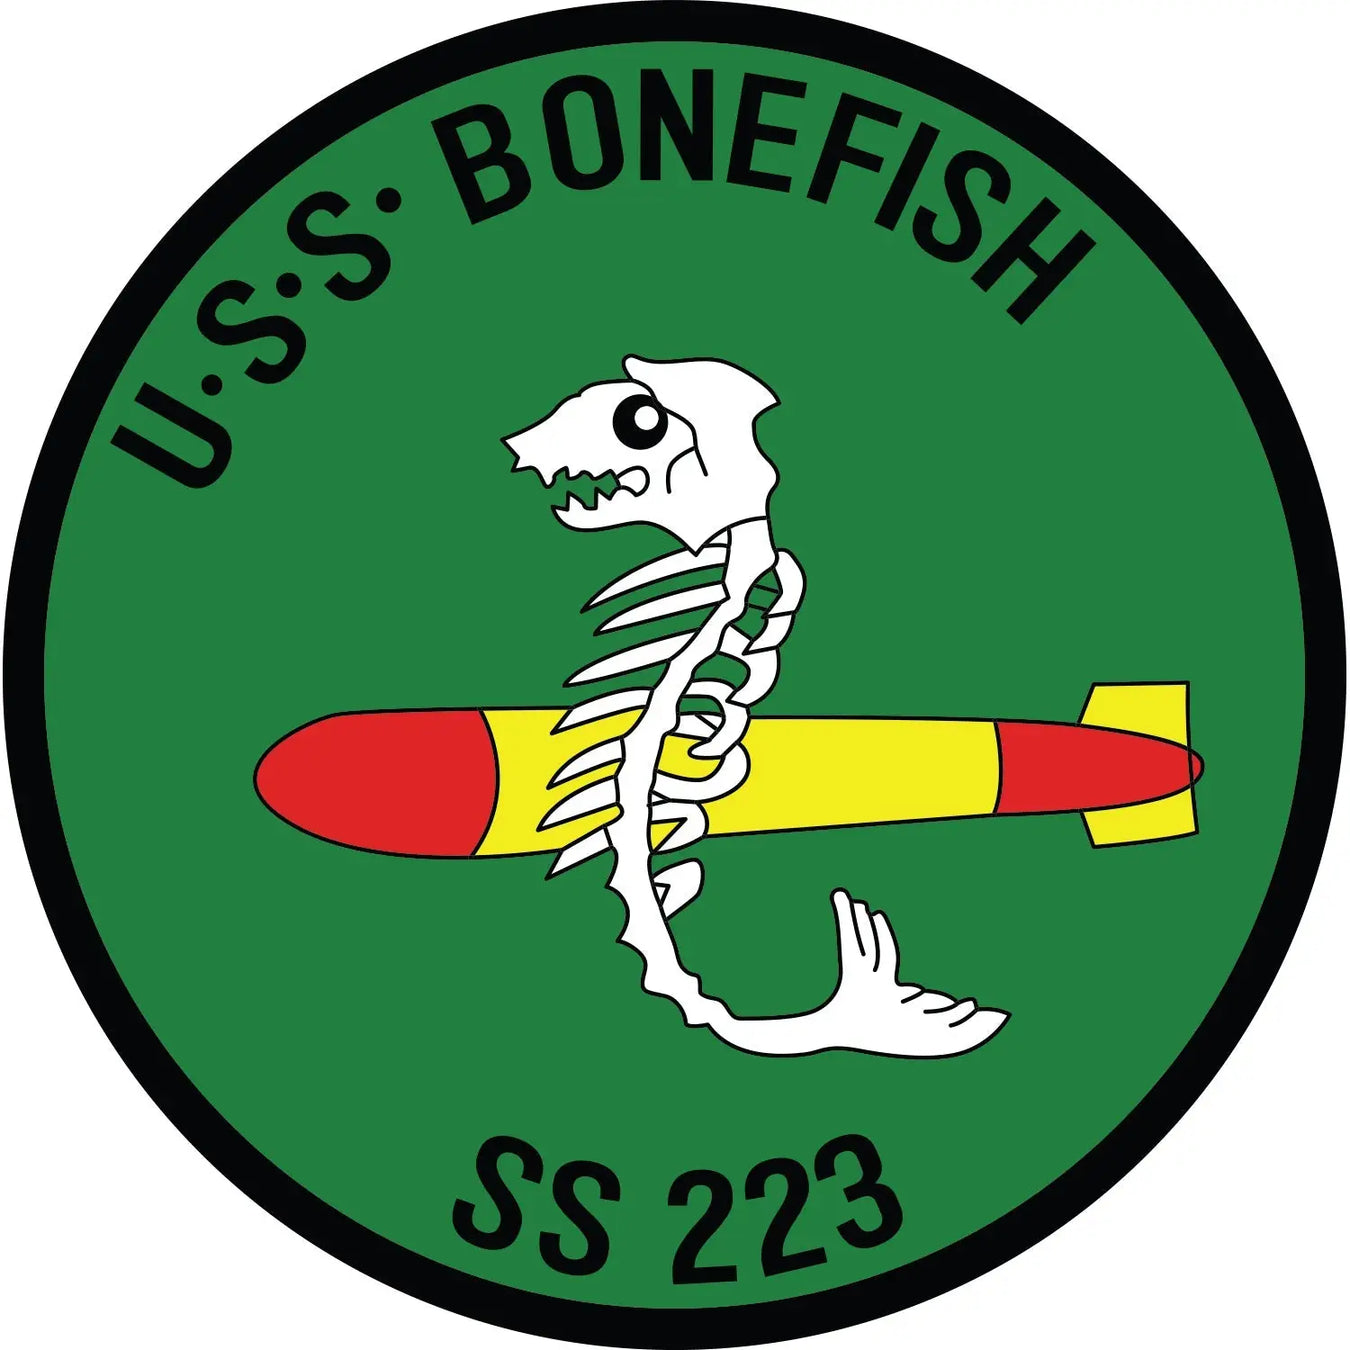 USS Bonefish (SS-223)